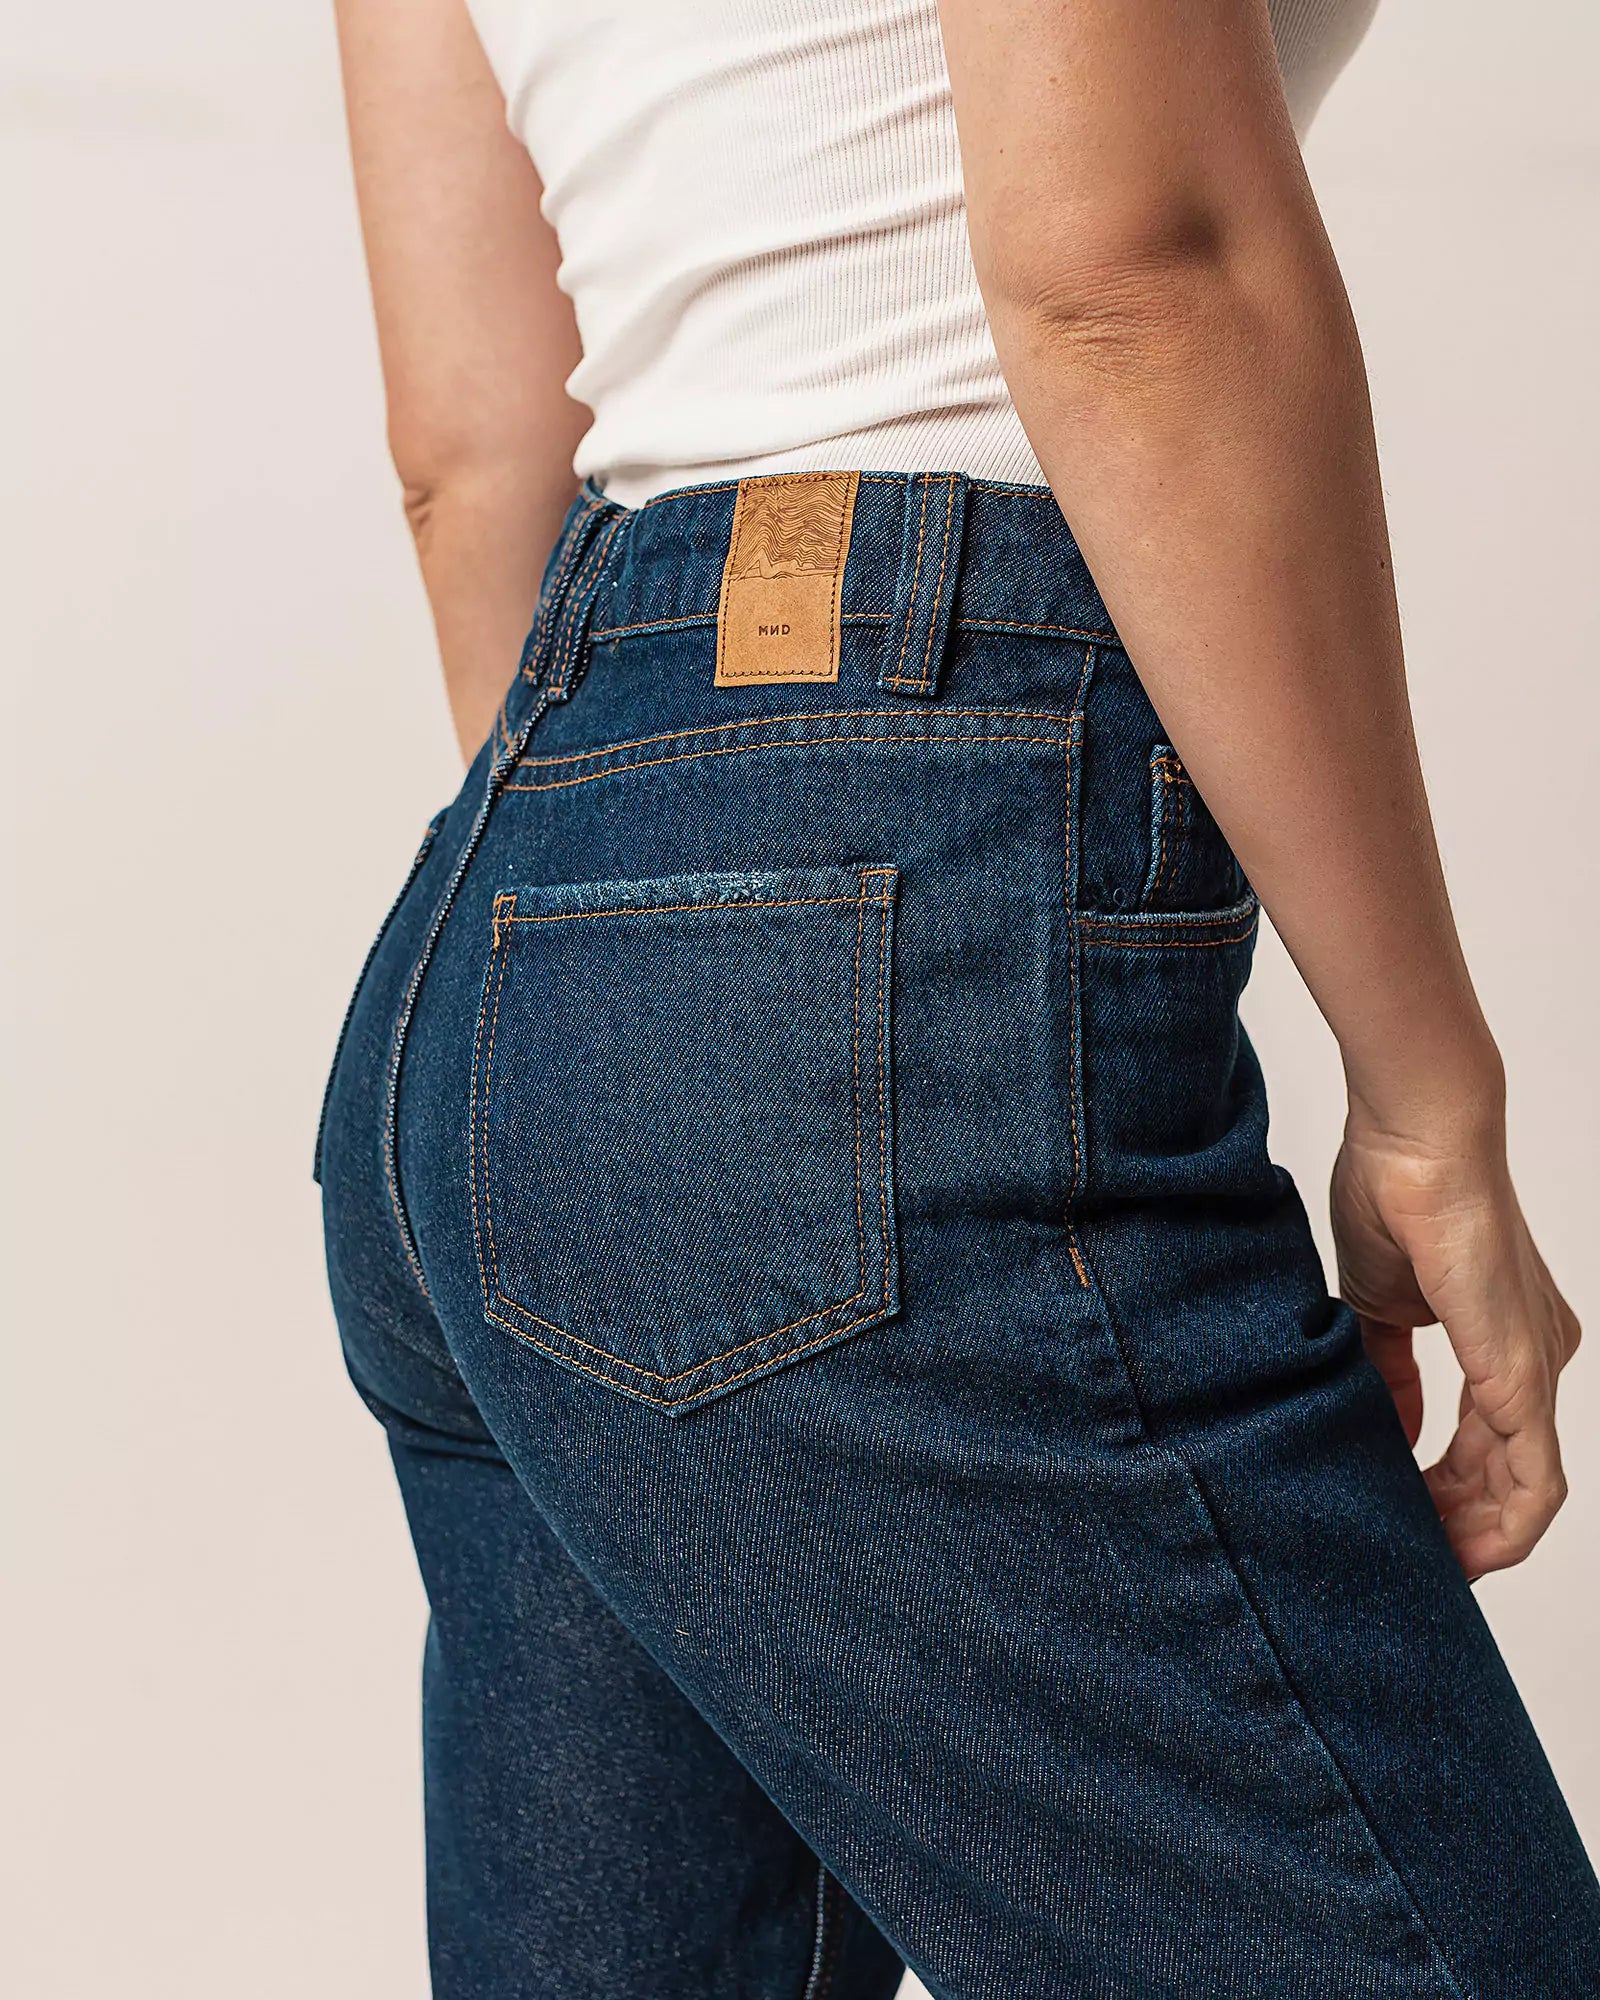 Calça Mom Jeans Barra Fio Azul Escuro Eco Denim™. Compre online moda sustentável e atemporal na Minimadeia. Roupas femininas estilosas, básicas e sustentáveis. Foto produto 02